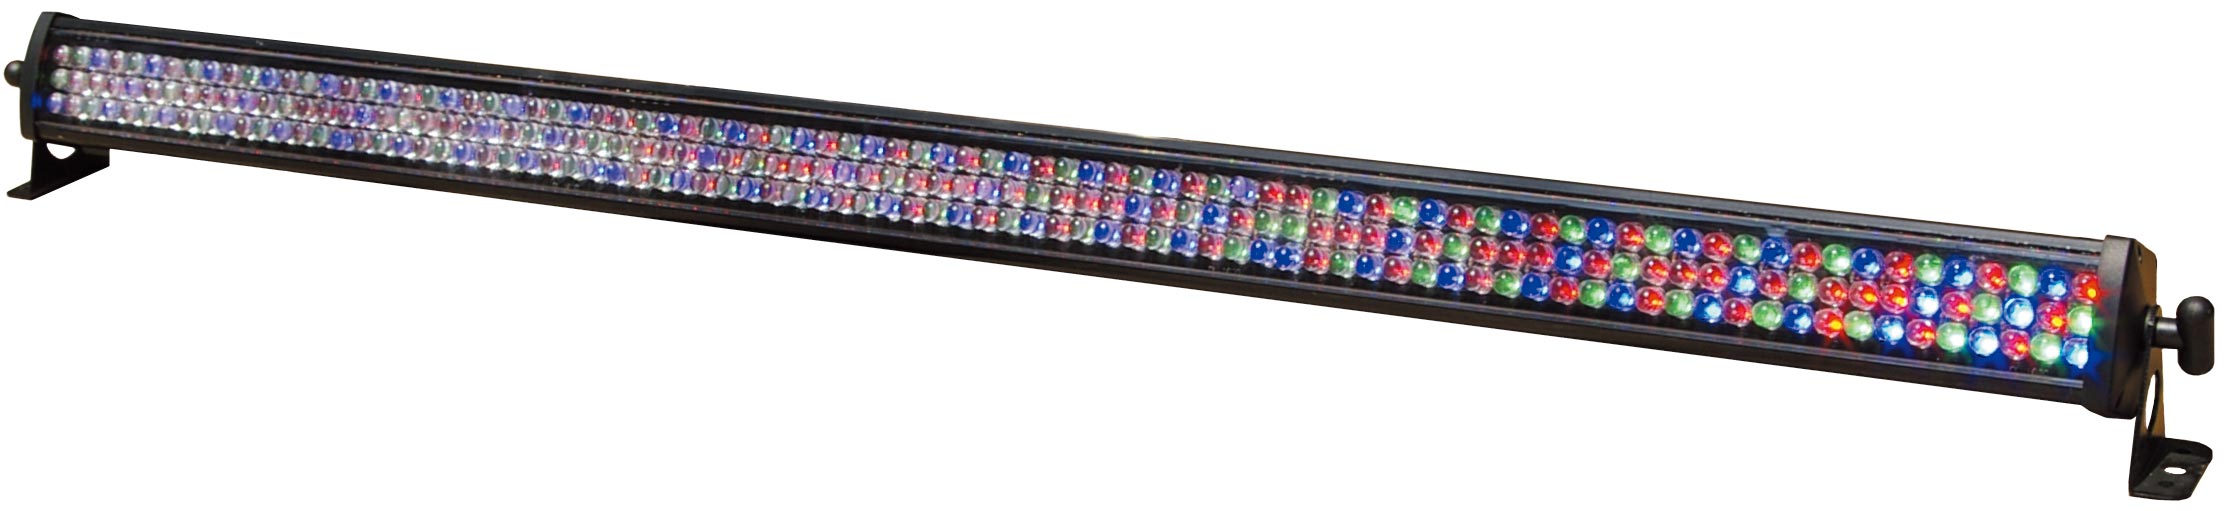 横型LED照明 / WLP-B501